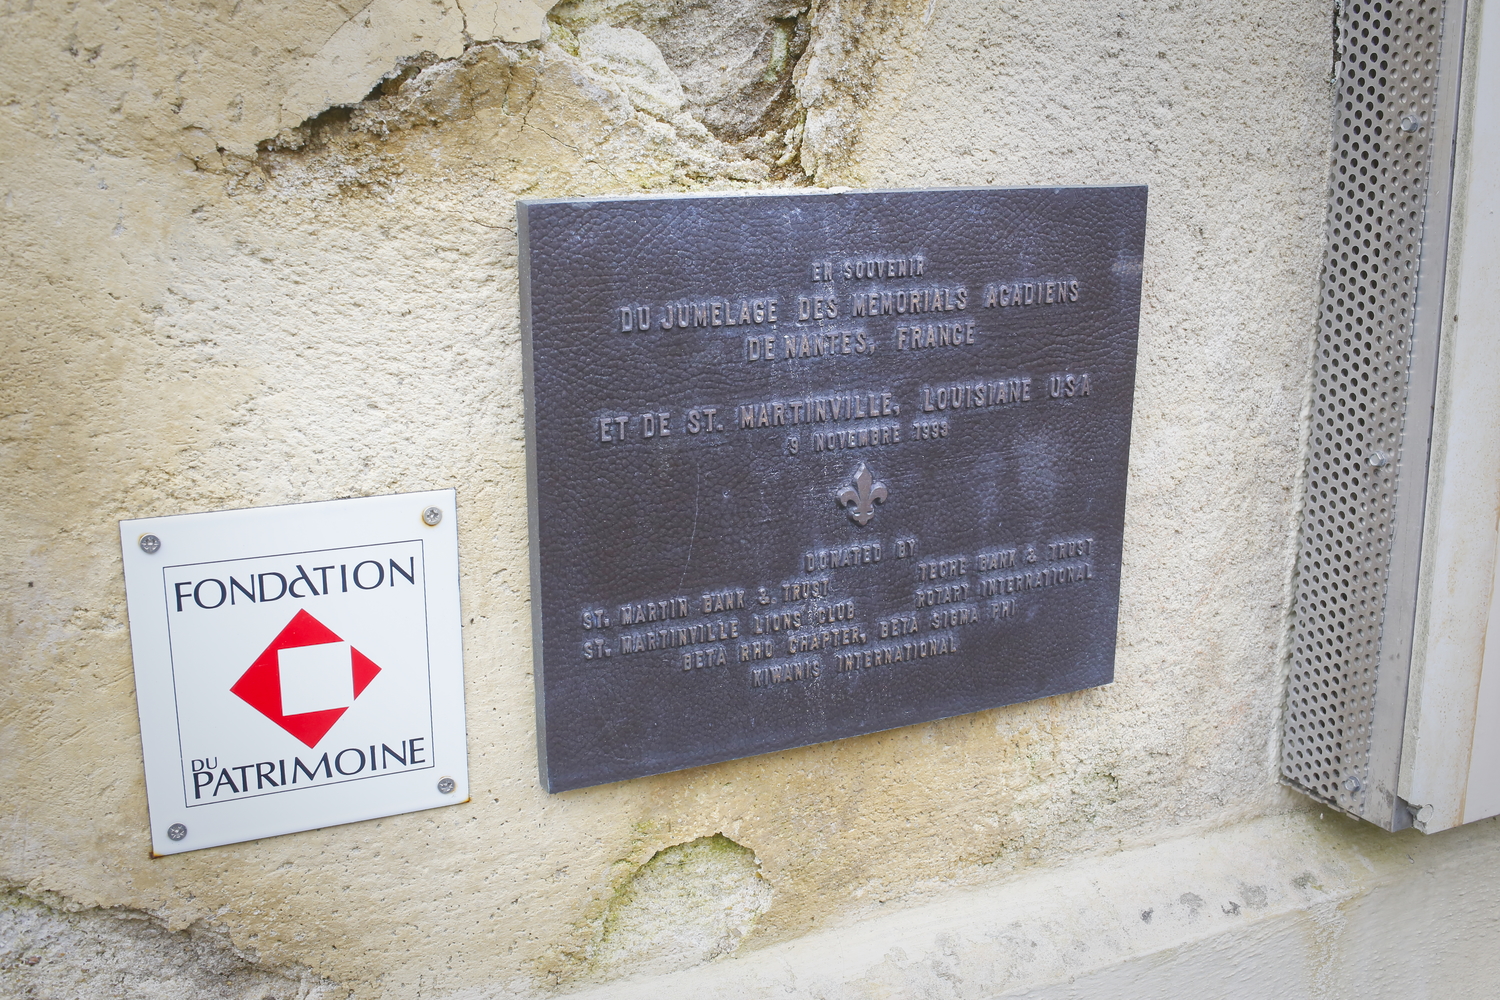 Une plaque qui commémore le jumelage des mémoriaux des Acadiens à Nantes et à Saint-Martinville en Louisiane © Globe Reporters